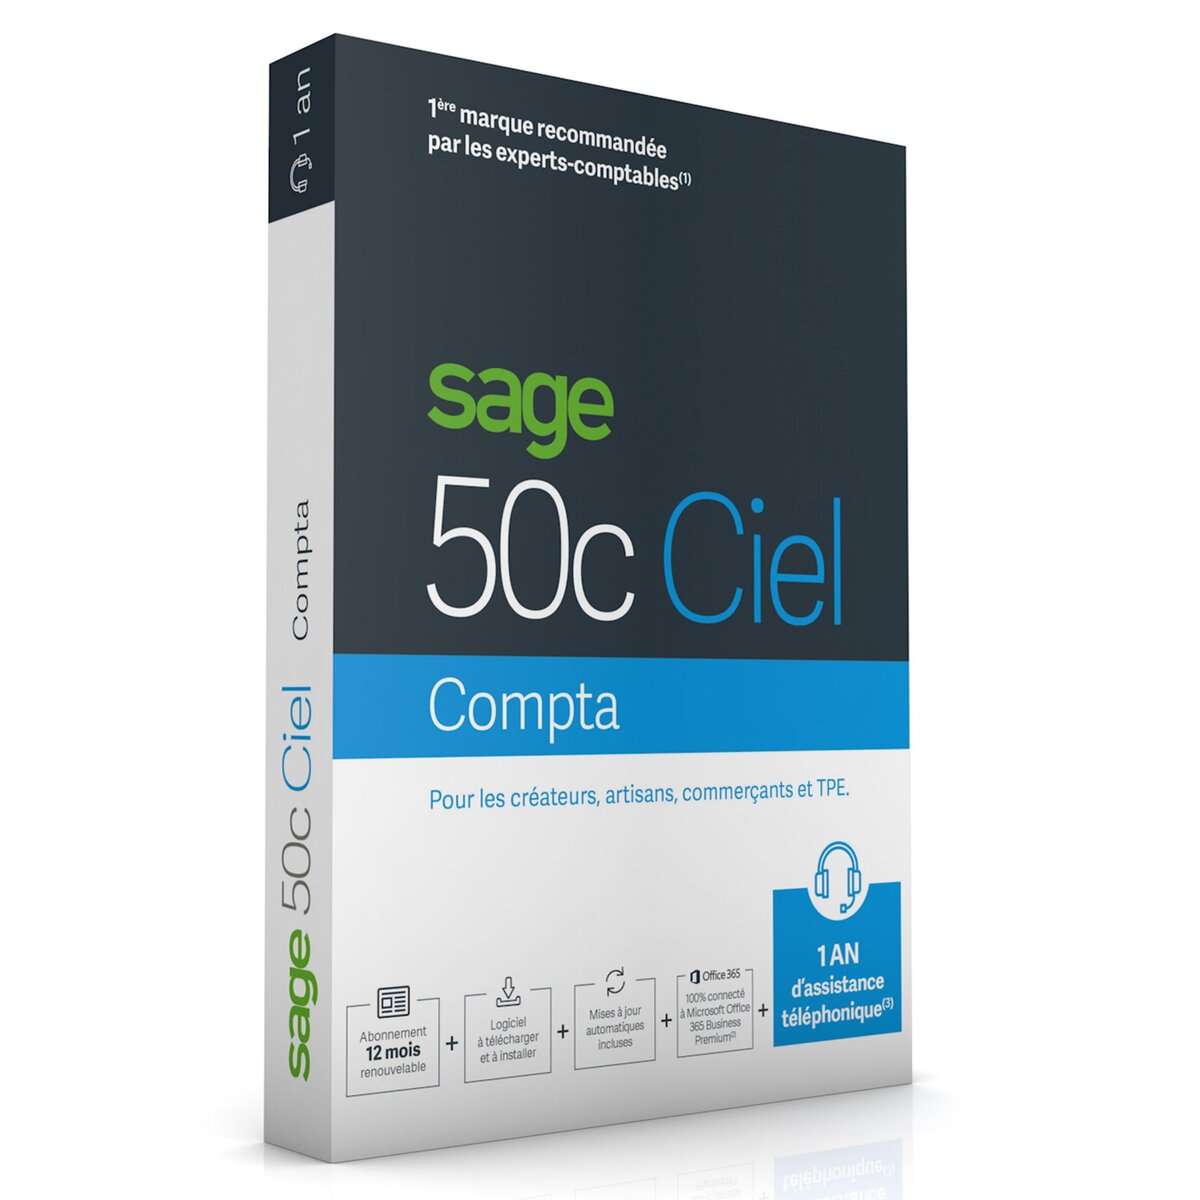 Sage Ciel 50c Compta - 1 an d'assistance